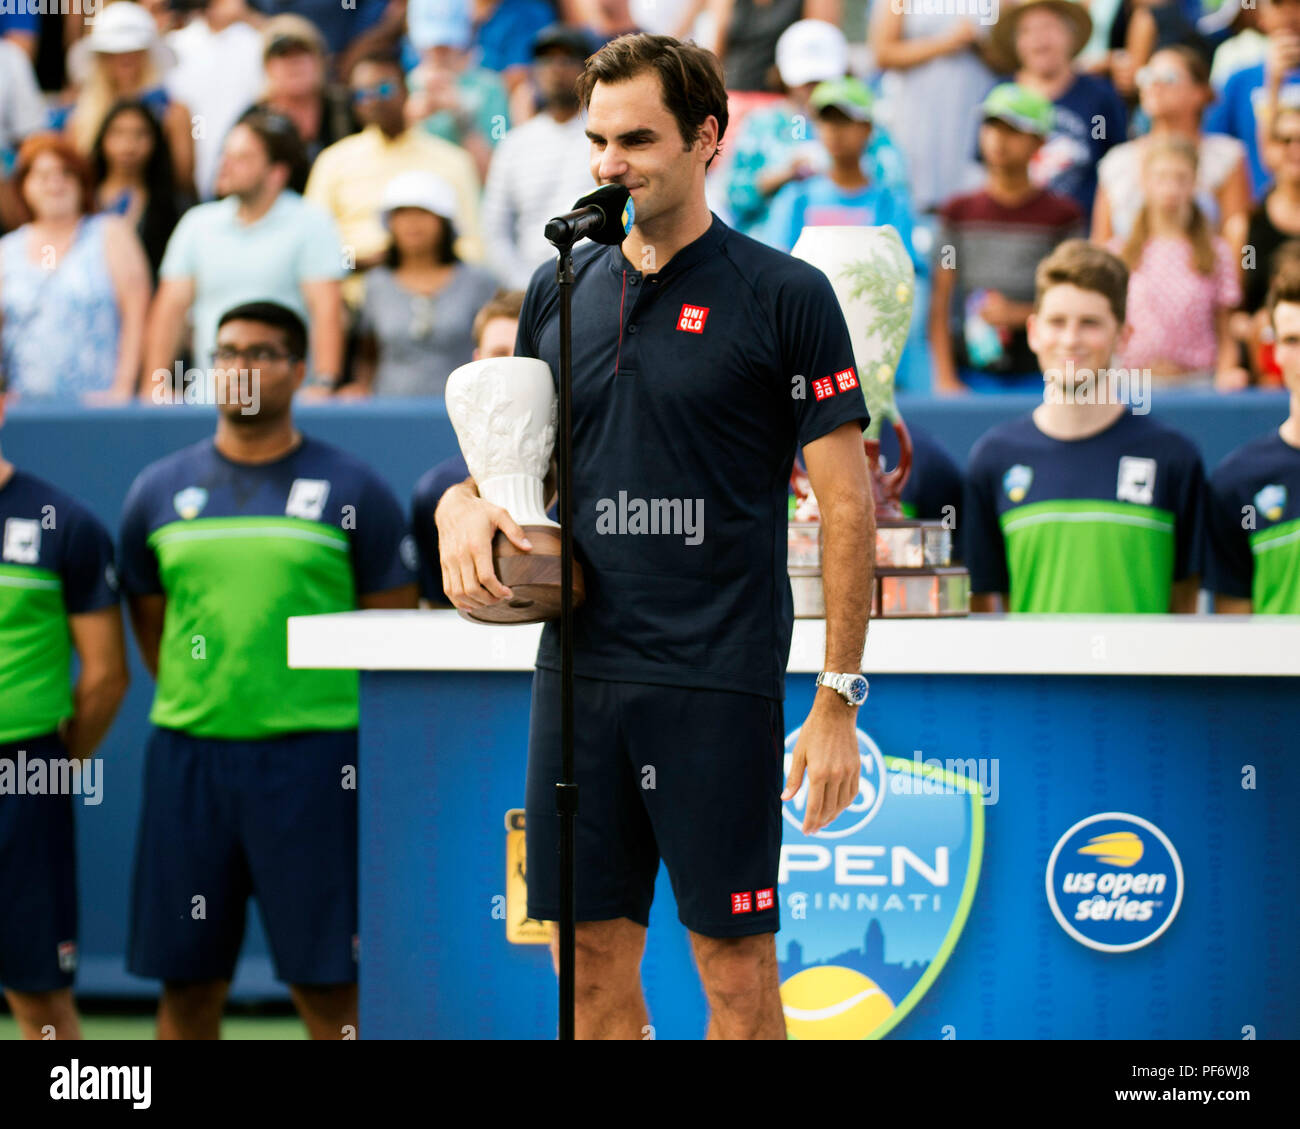 Mason, Ohio, USA. August 19, 2018: Roger Federer (SUI) bei der Preisverleihung am westlichen Süden öffnen, Mason, Ohio, USA. Brent Clark/Alamy leben Nachrichten Stockfoto